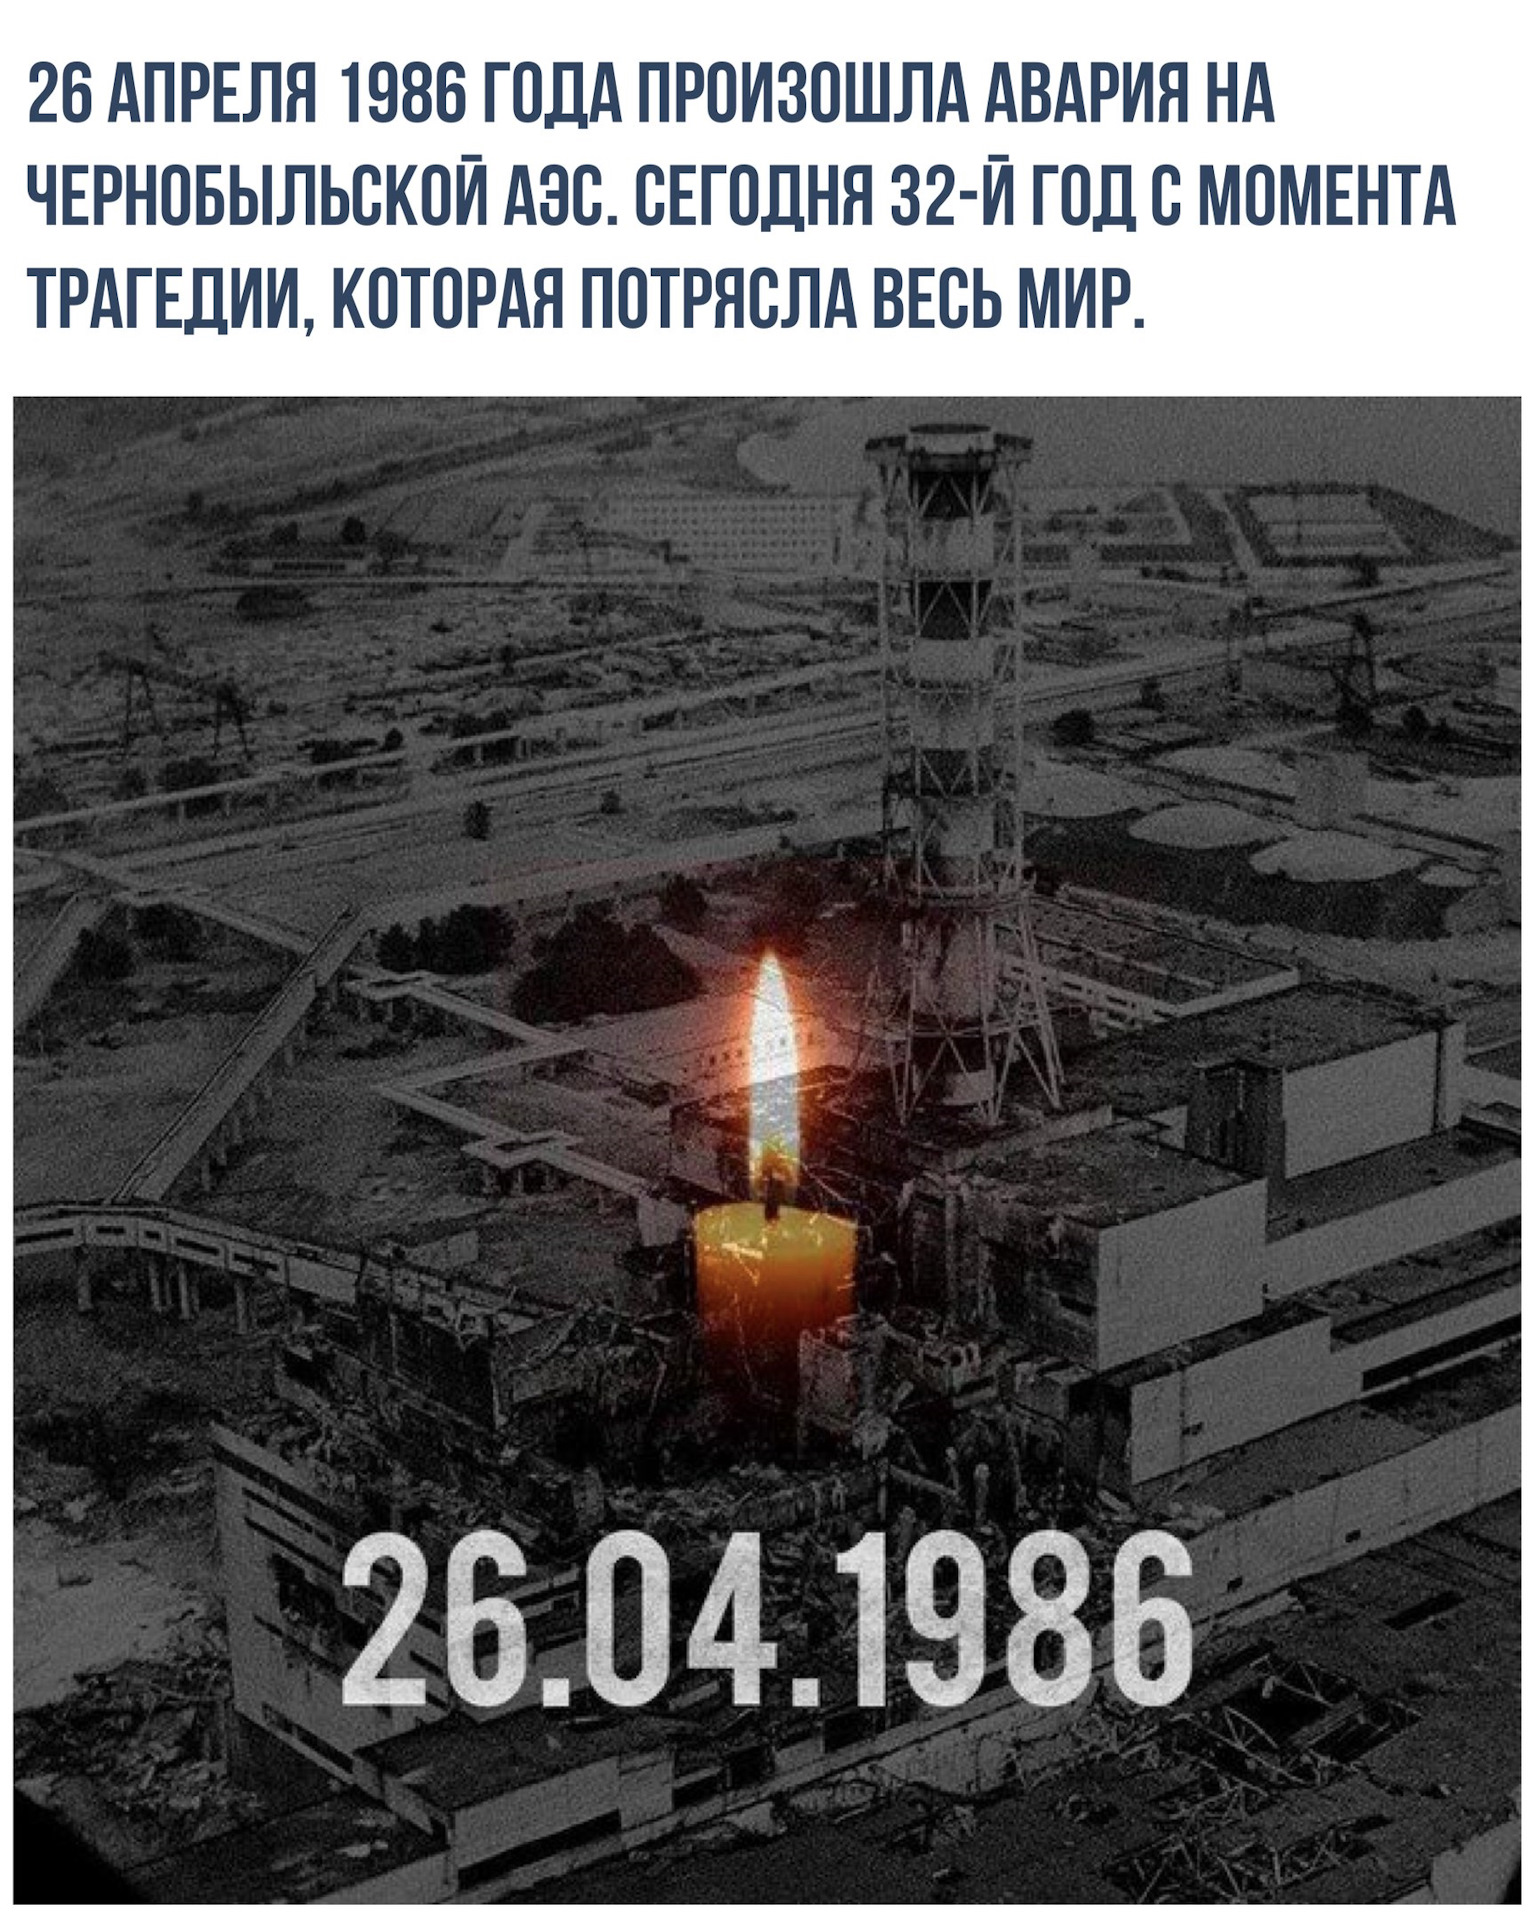 В каком году случилась чернобыльская катастрофа. Чернобыль 26 апреля 1986. Катастрофа на Чернобыльской АЭС 26 апреля 1986 года. 26 Апреля 1986 года Чернобыльская АЭС. Чернобыль 1986 год 25 апреля.